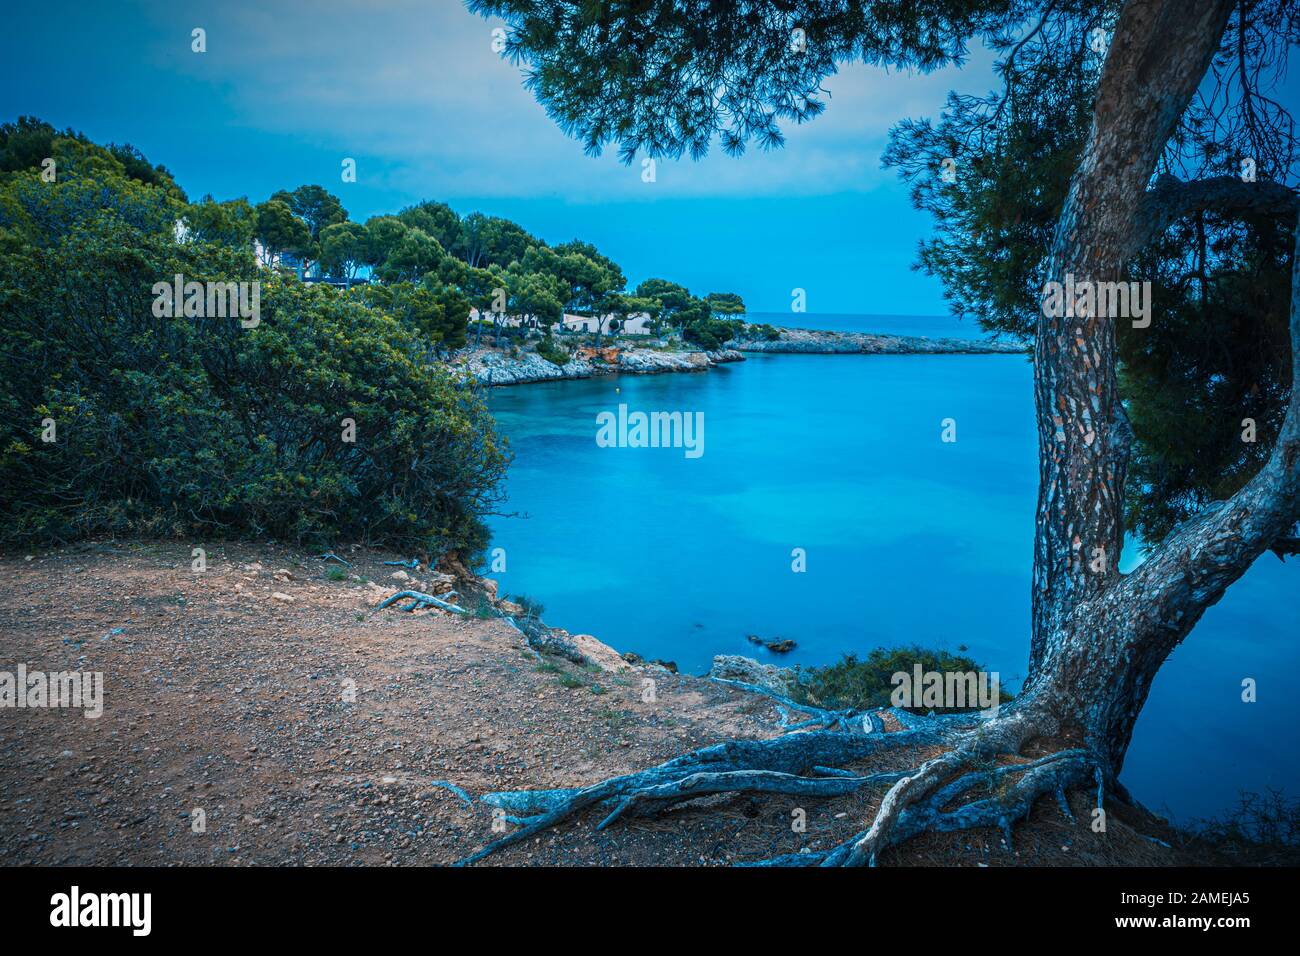 La côte de l'île de Majorque, Îles Baléares dans la mer Méditerranée, l'Espagne Banque D'Images